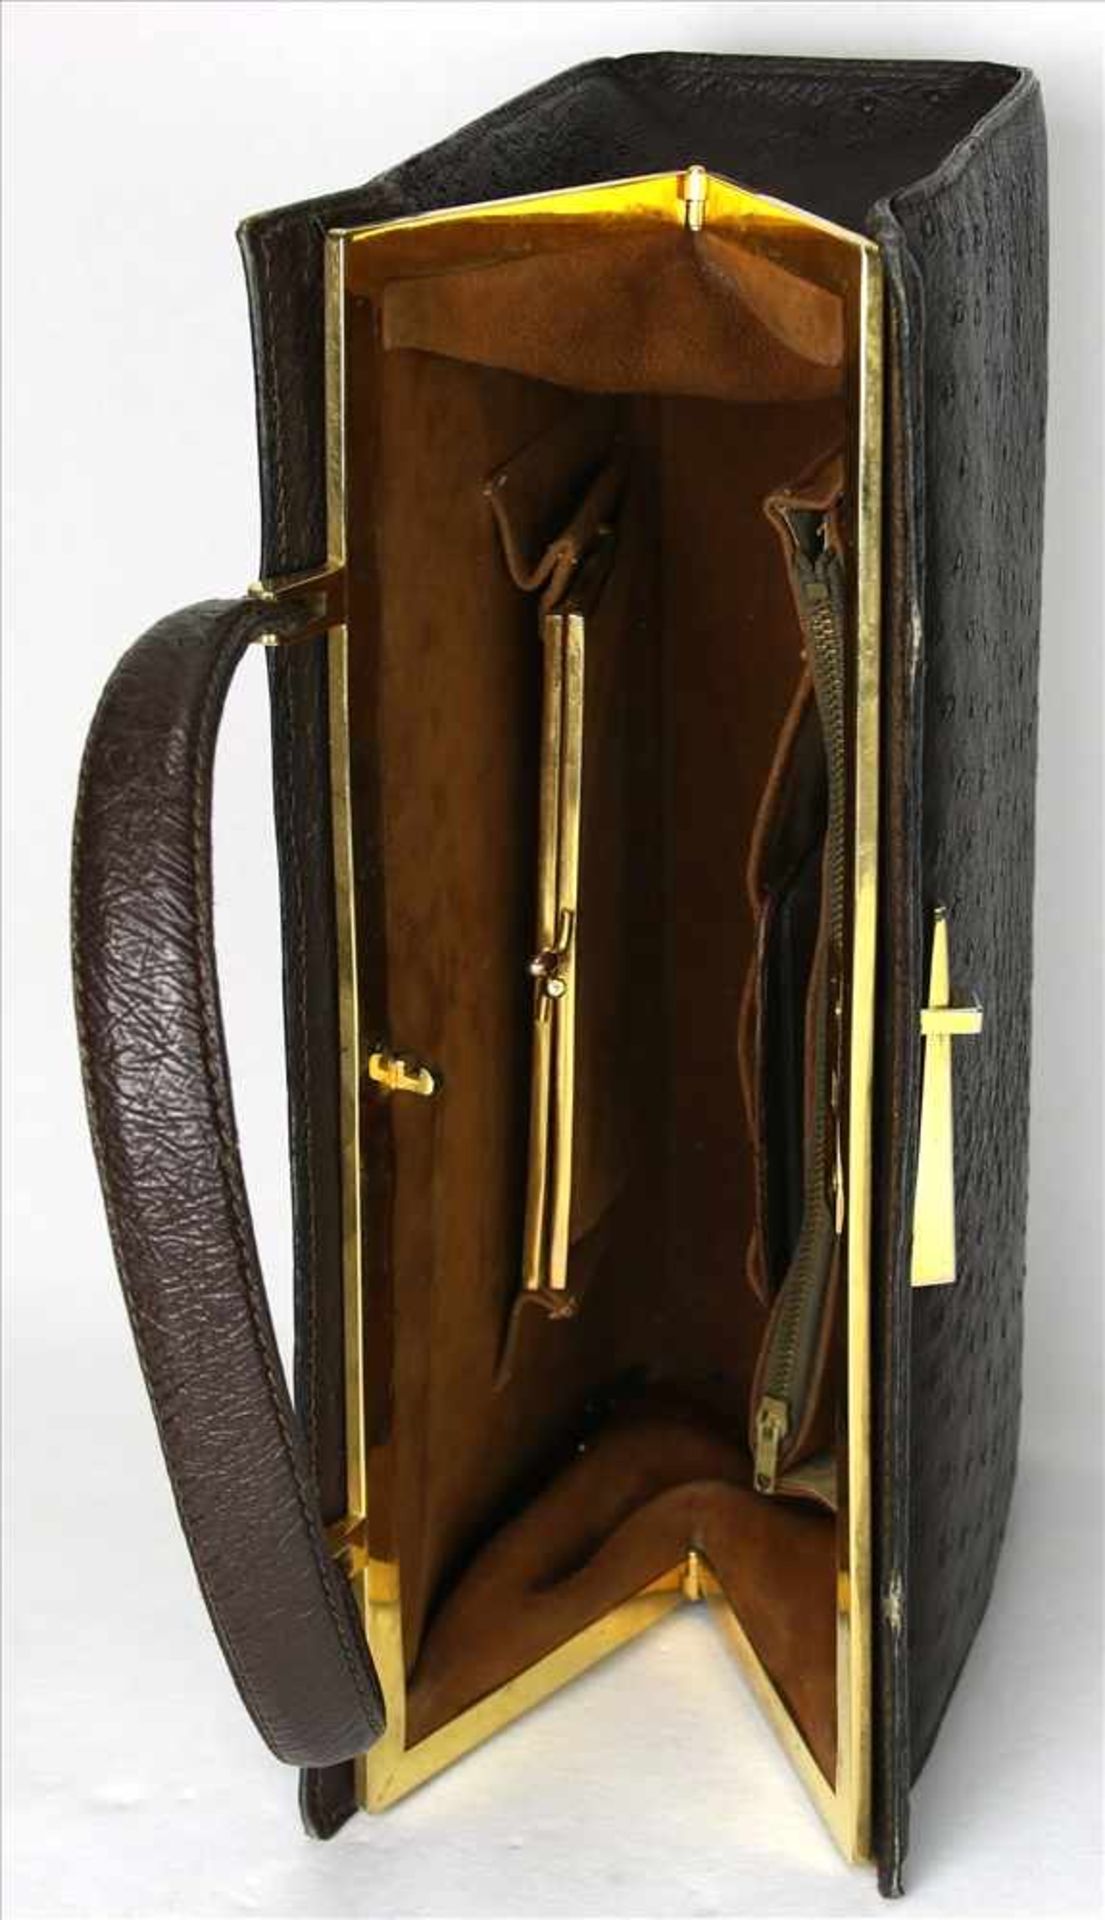 Vintage Handtasche1970-er Jahre. Straußenleder. Größe ca. 31 x 10 cm, Höhe ca. 20 cm ohne Henkel. - Image 3 of 3